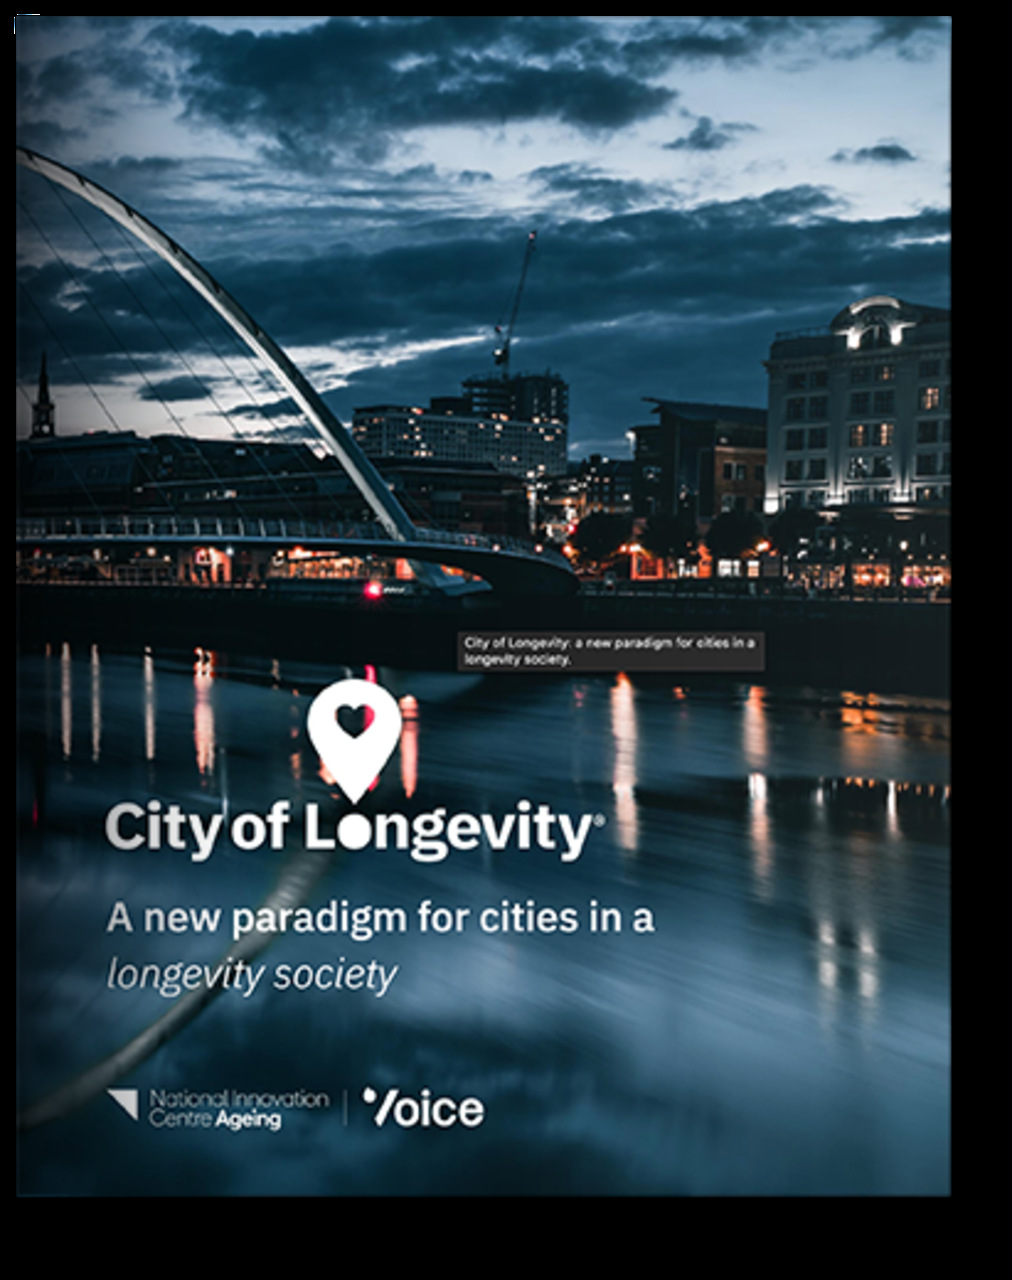 Město dlouhověkosti: brožura prezentace projektu